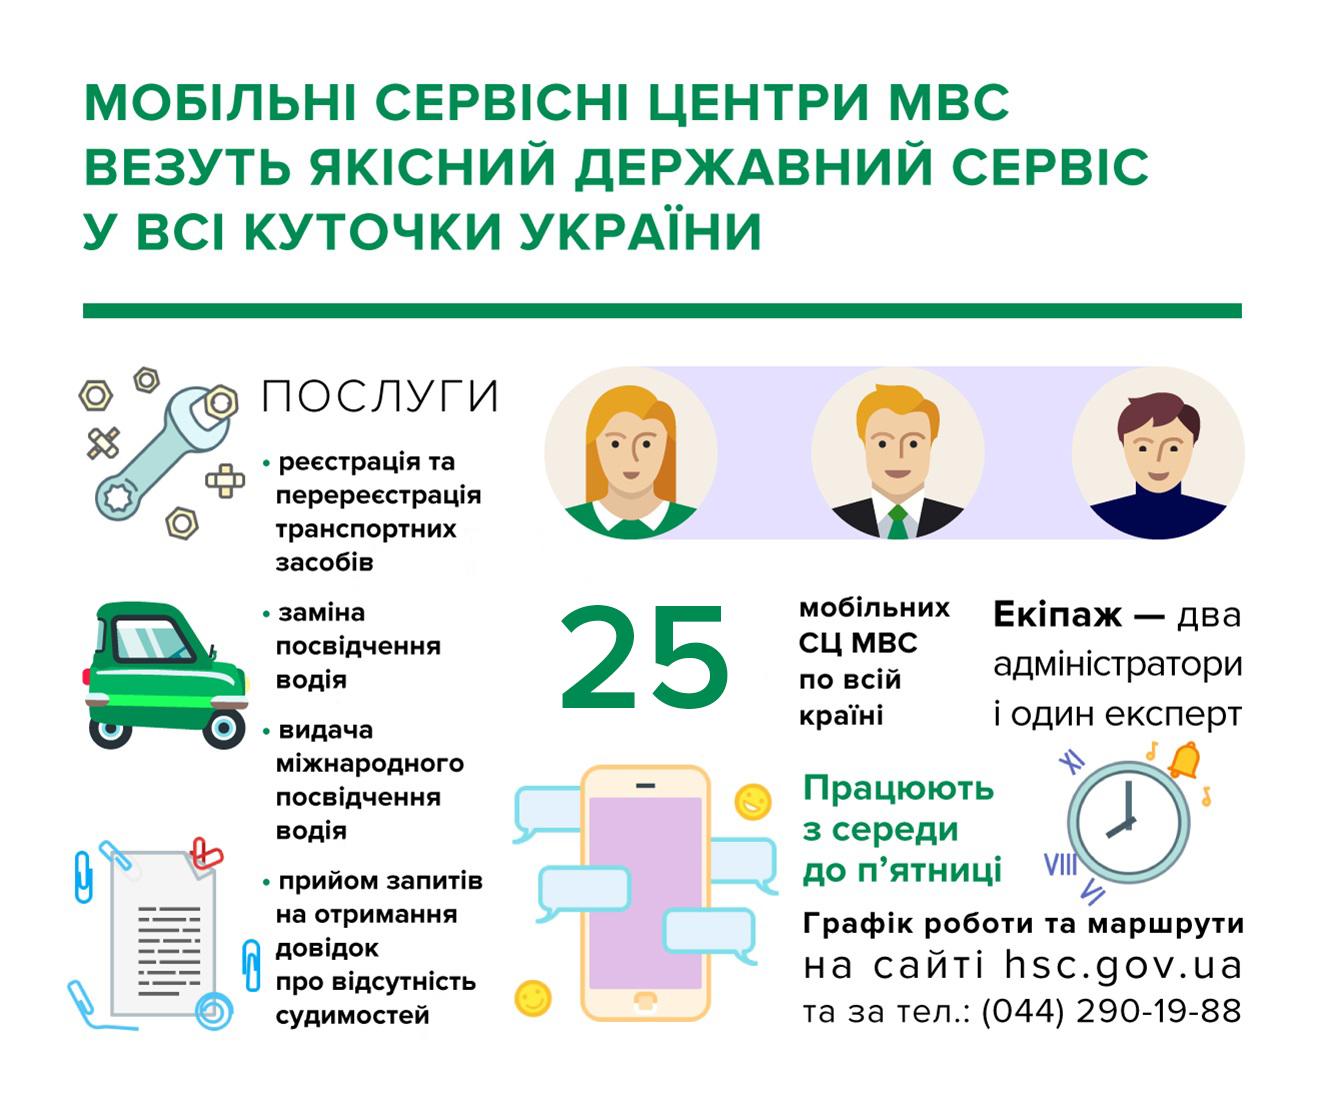 Мобильные сервисные центры МВД: особенности работы 2